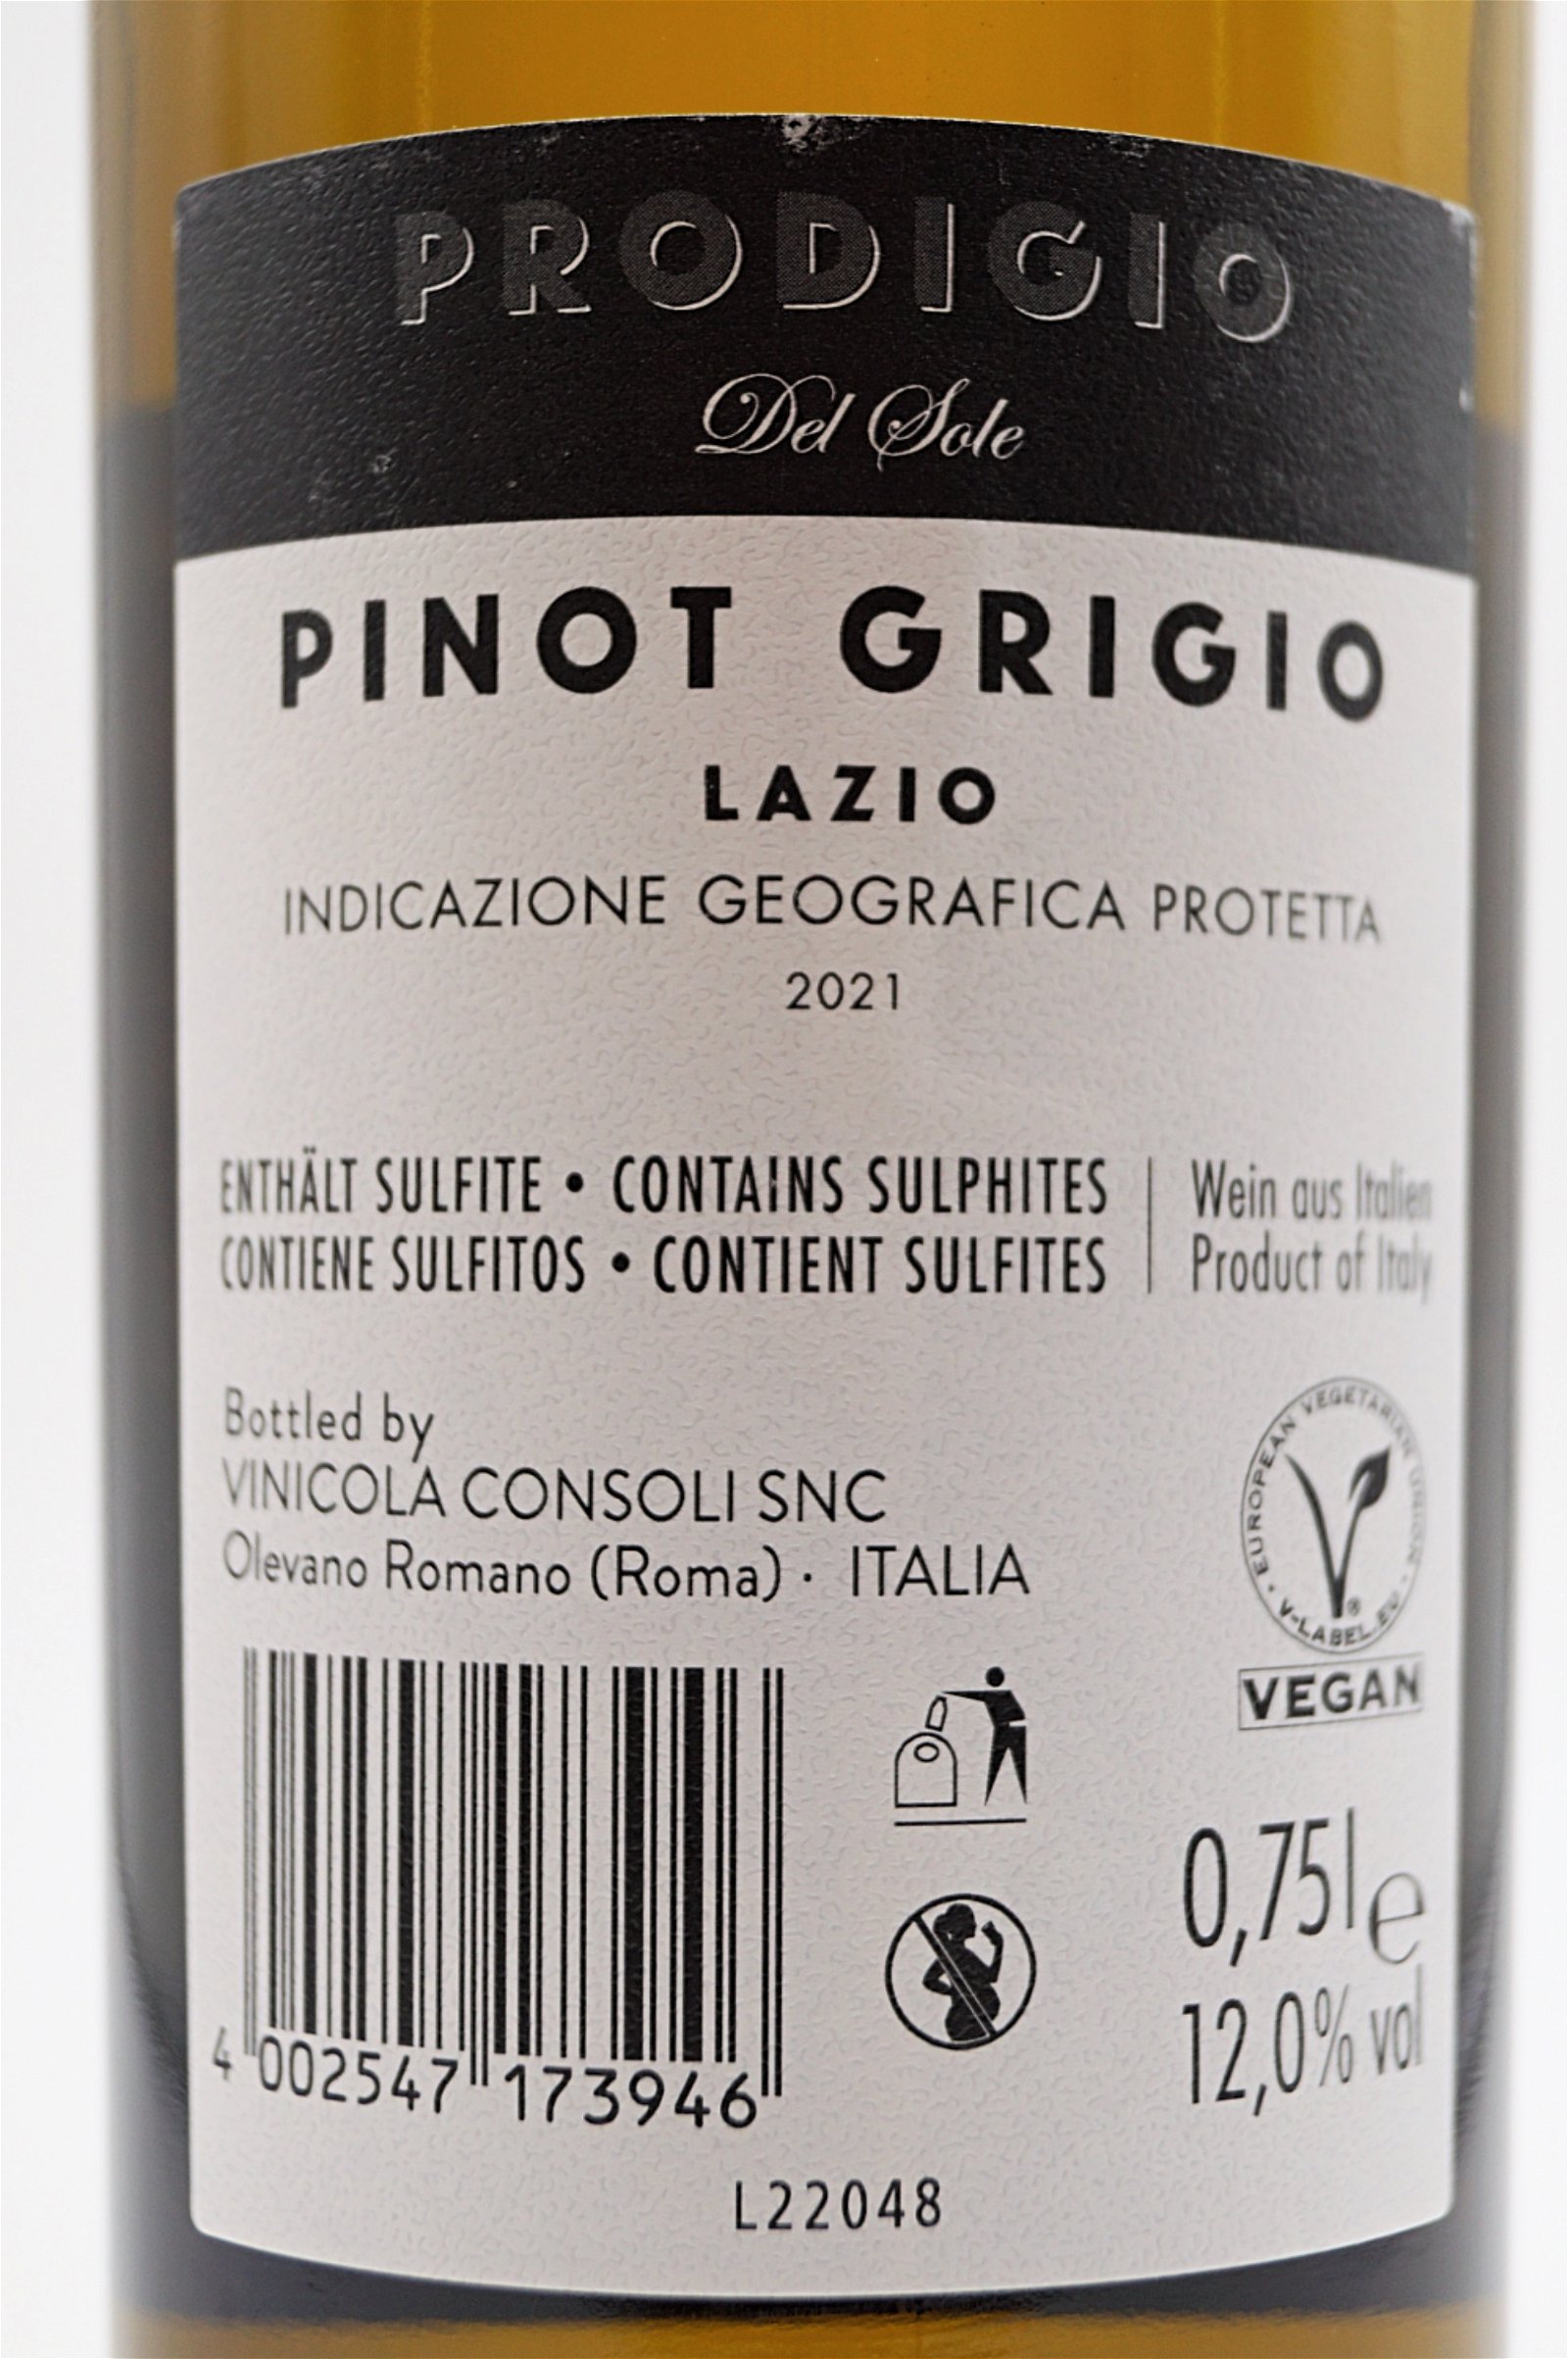 Latentia Winery Pinot Grigio Del Sole Prodigio Lazio 2021